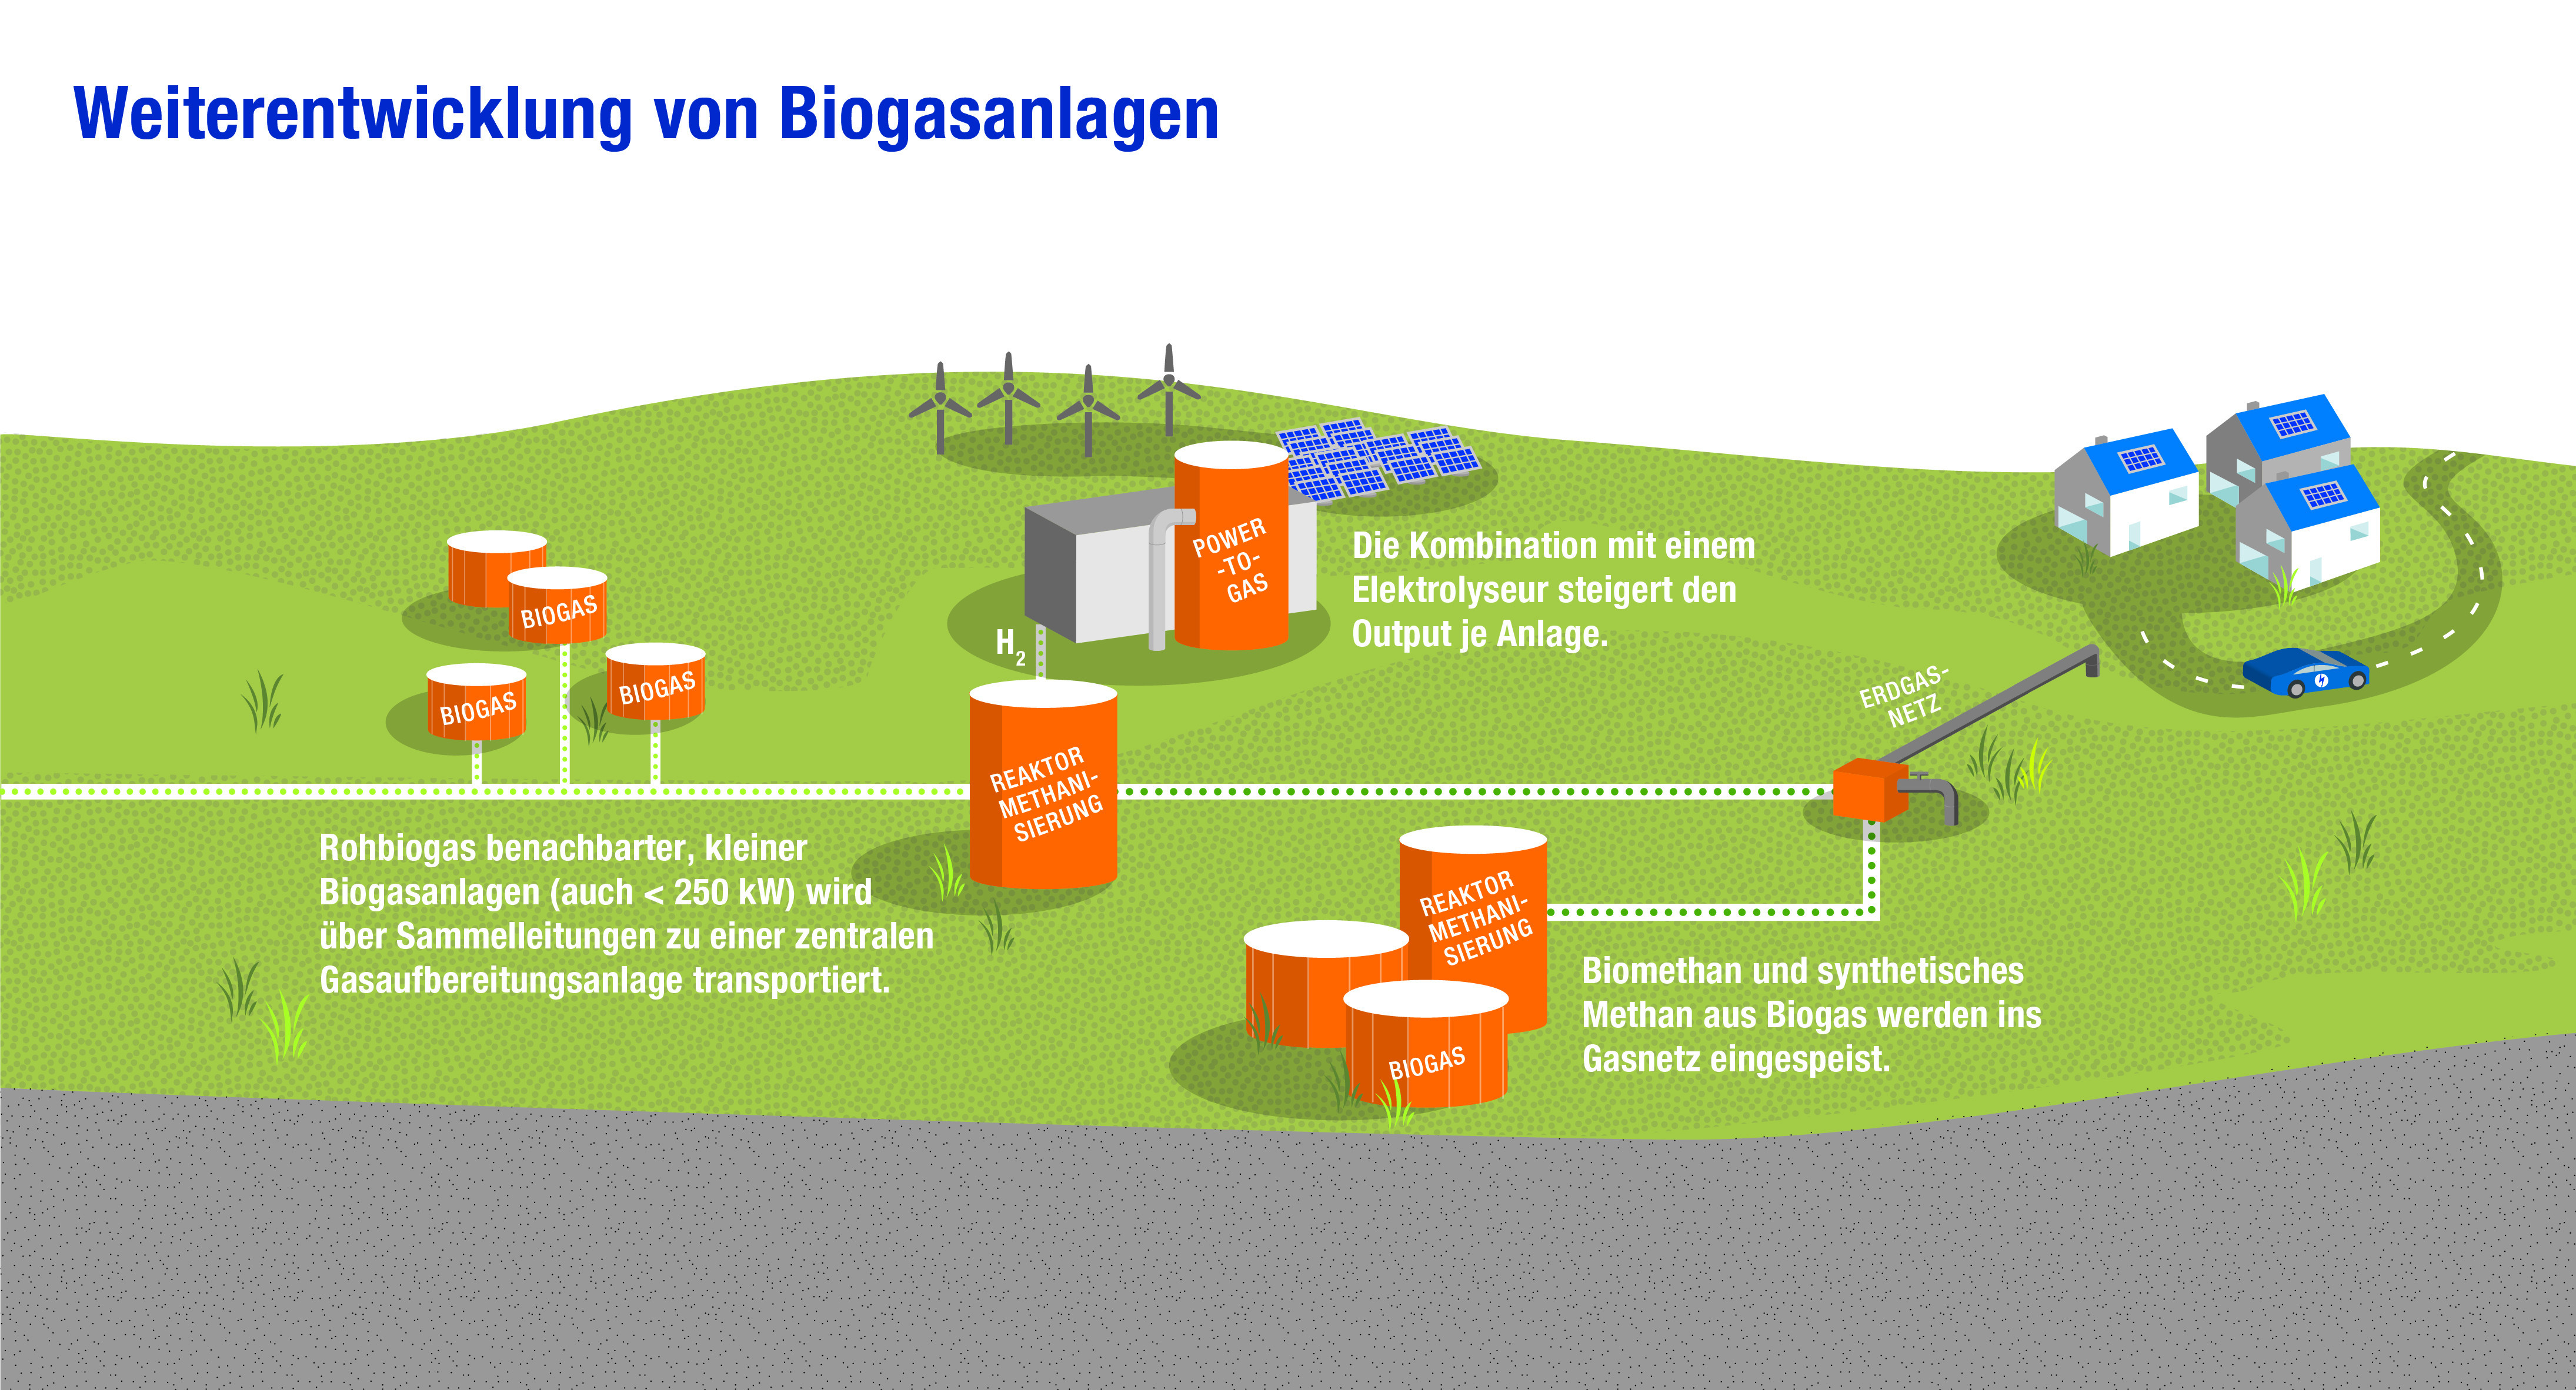 Die Deutschlandkarte zeigt die Weiterentwicklung von Biogasanlagen